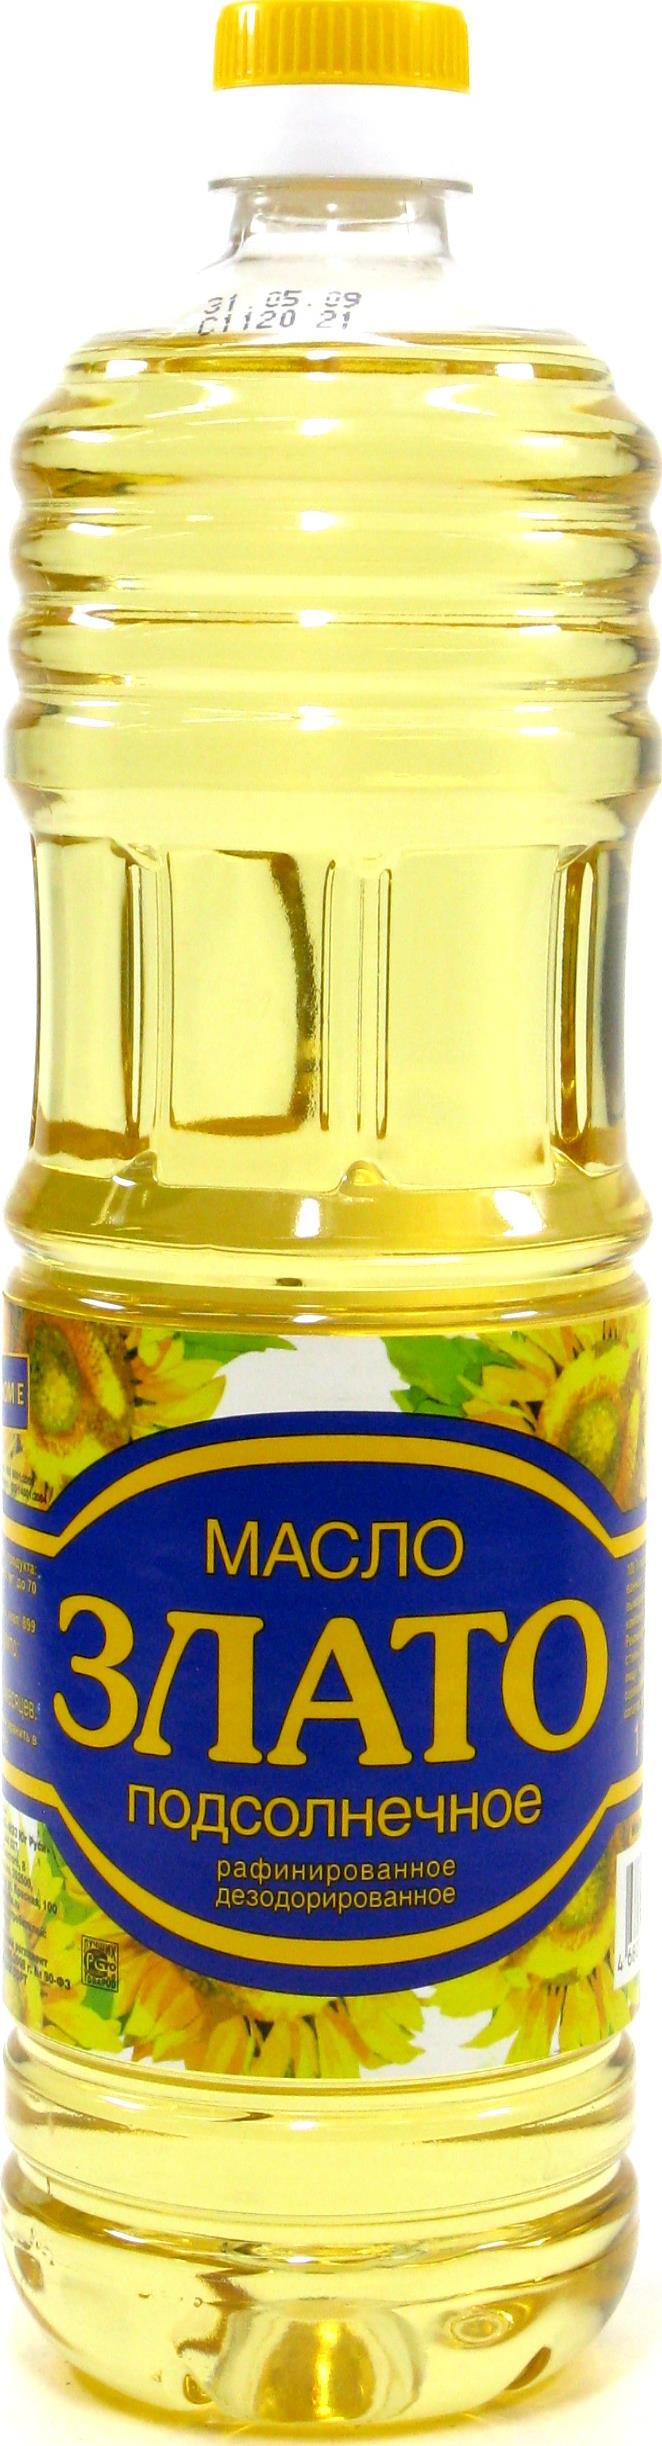 Масло подсолнечное Злато купить с доставкой - EdaStore.ru